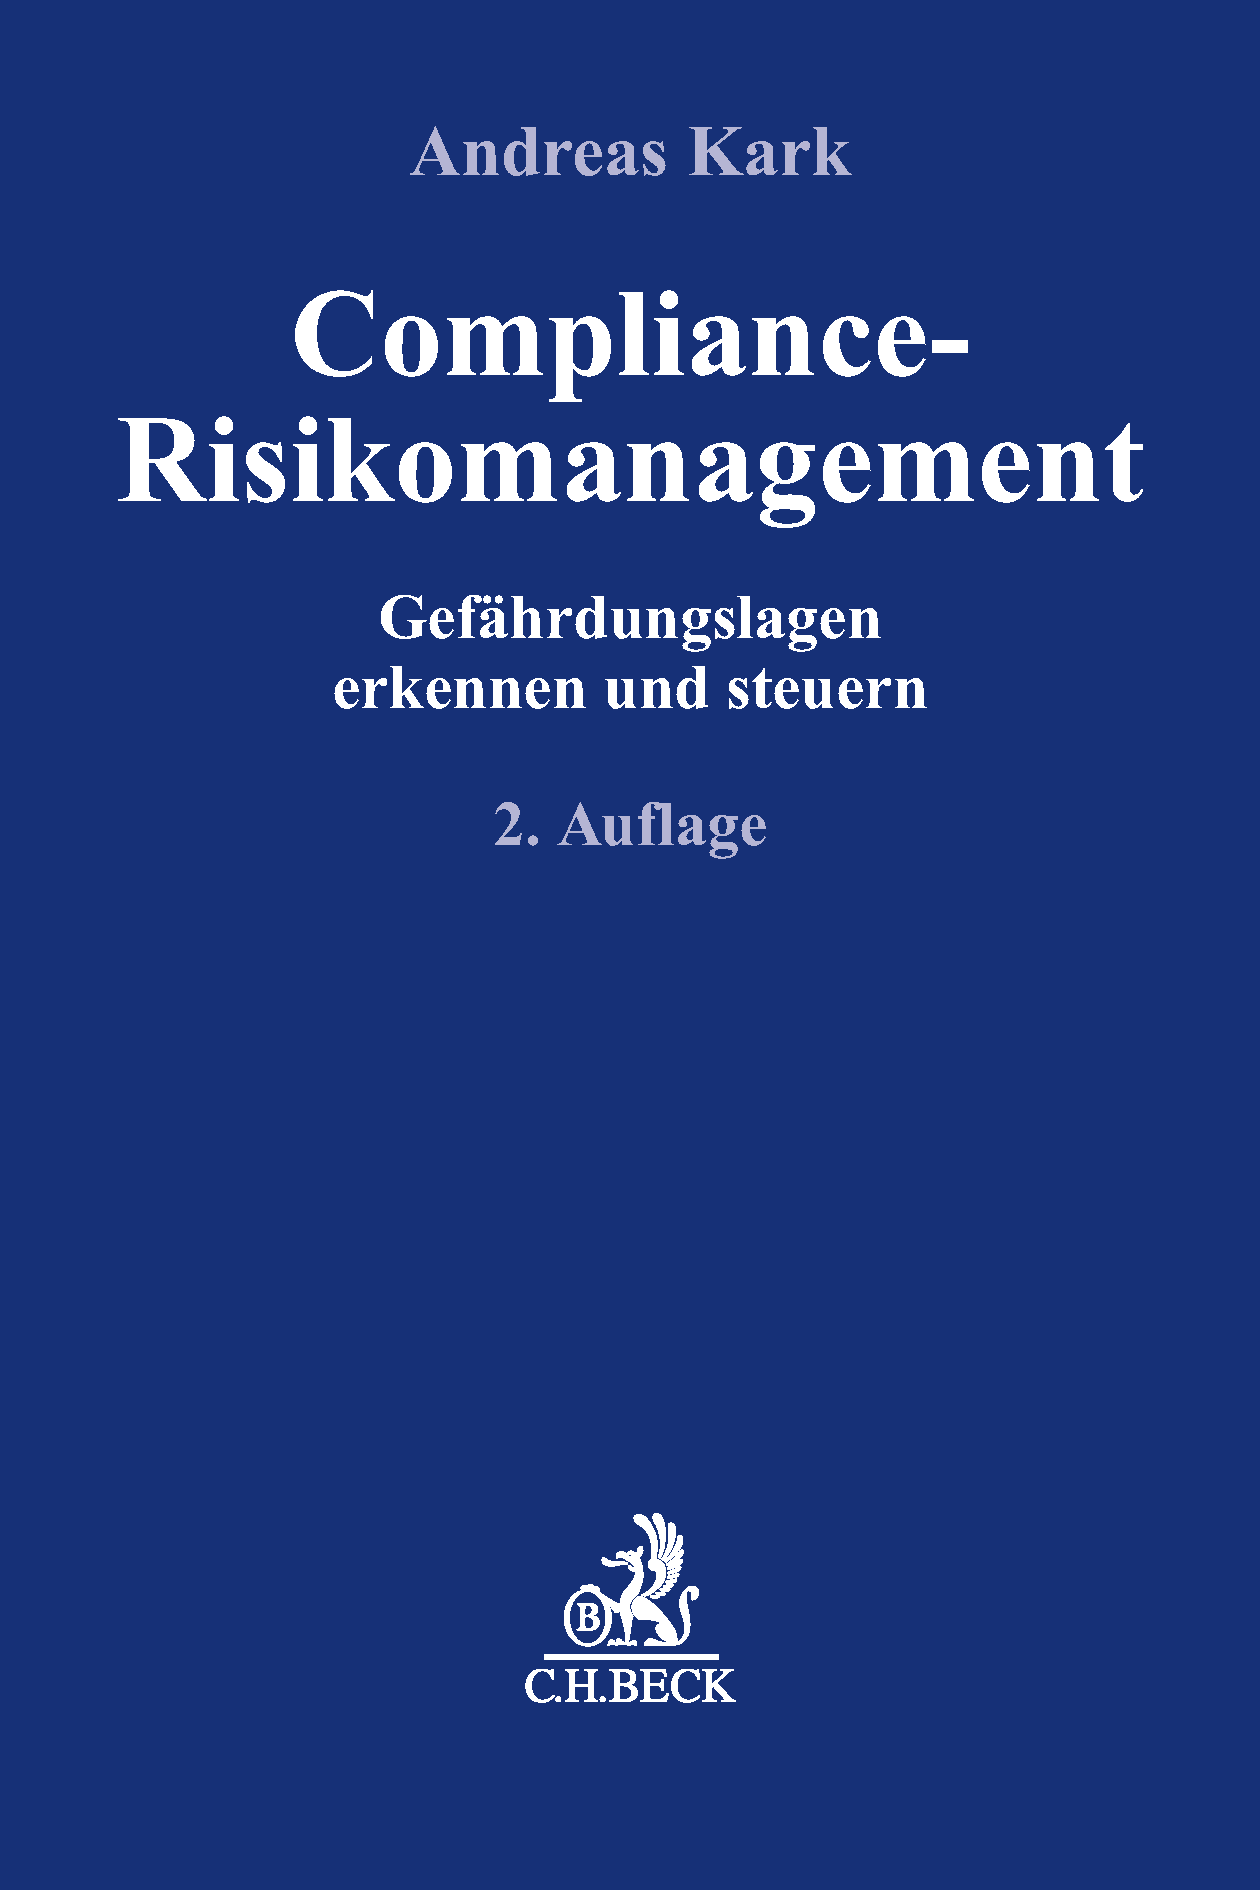 Compliance-Risikomangement, C.H. Beck, 2. Aufl. 2019